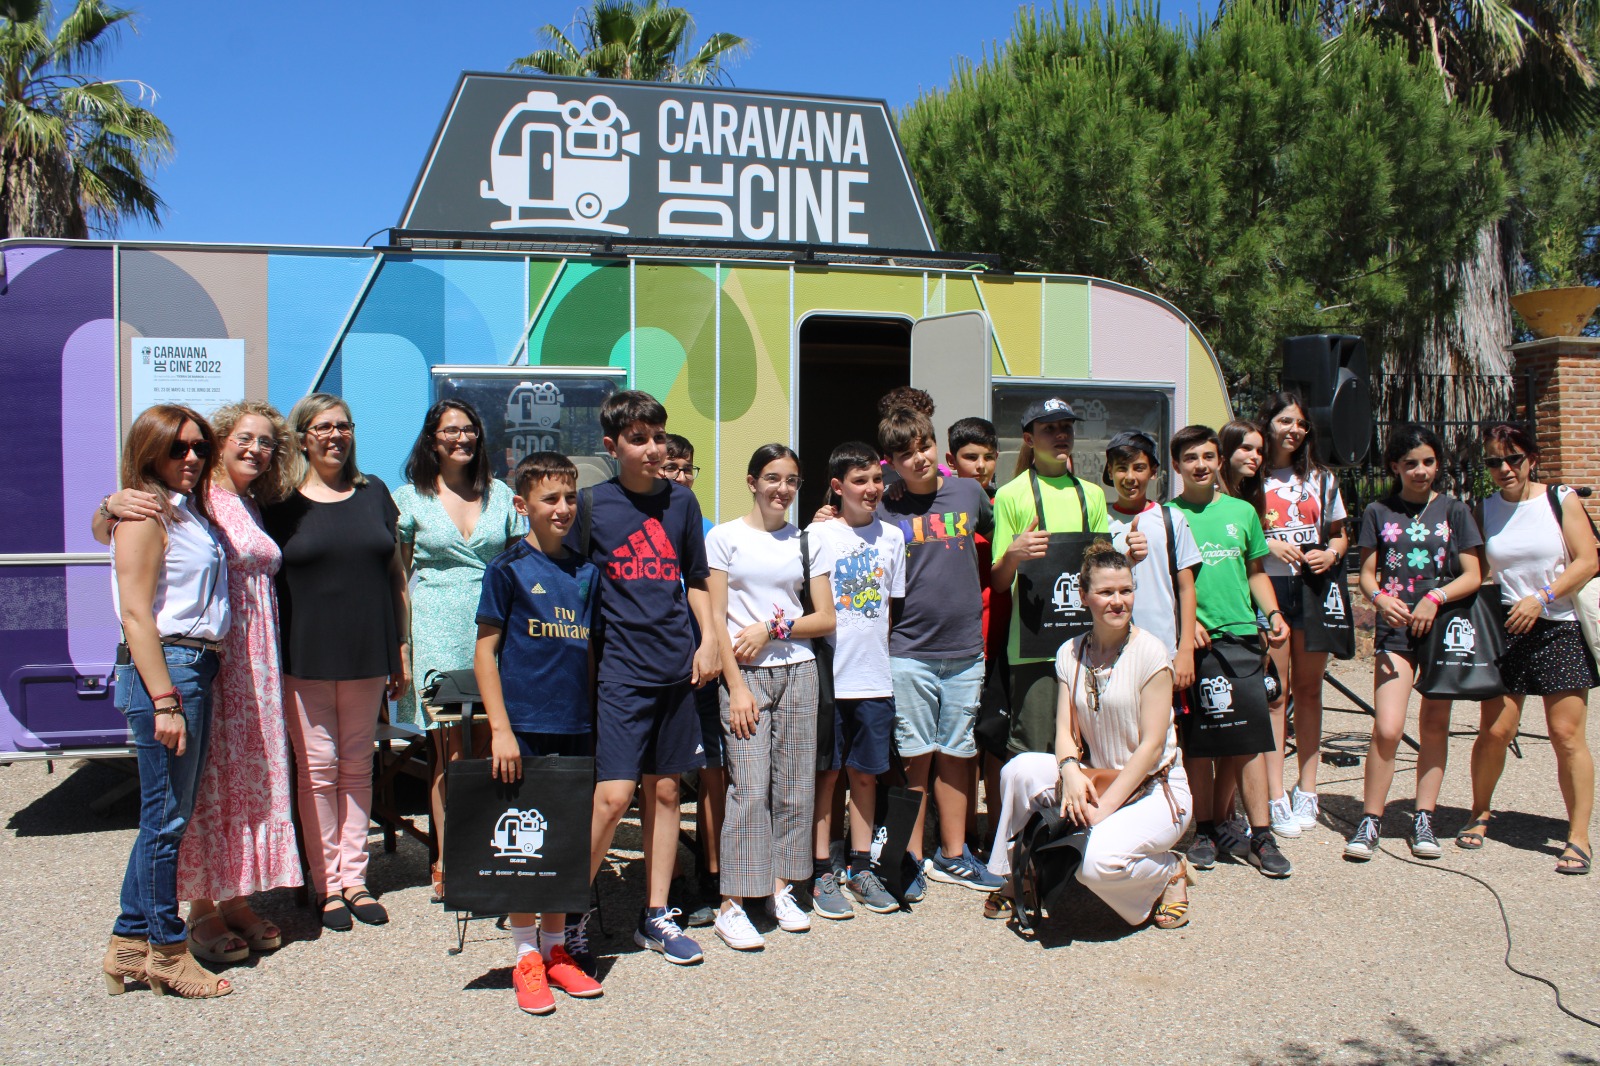 La Caravana de Cine recorrió Tierra de Barros acercando el séptimo arte a pueblos como Hornachos, Ribera del Fresno, Almendralejo, Entrín Bajo y Santa Marta